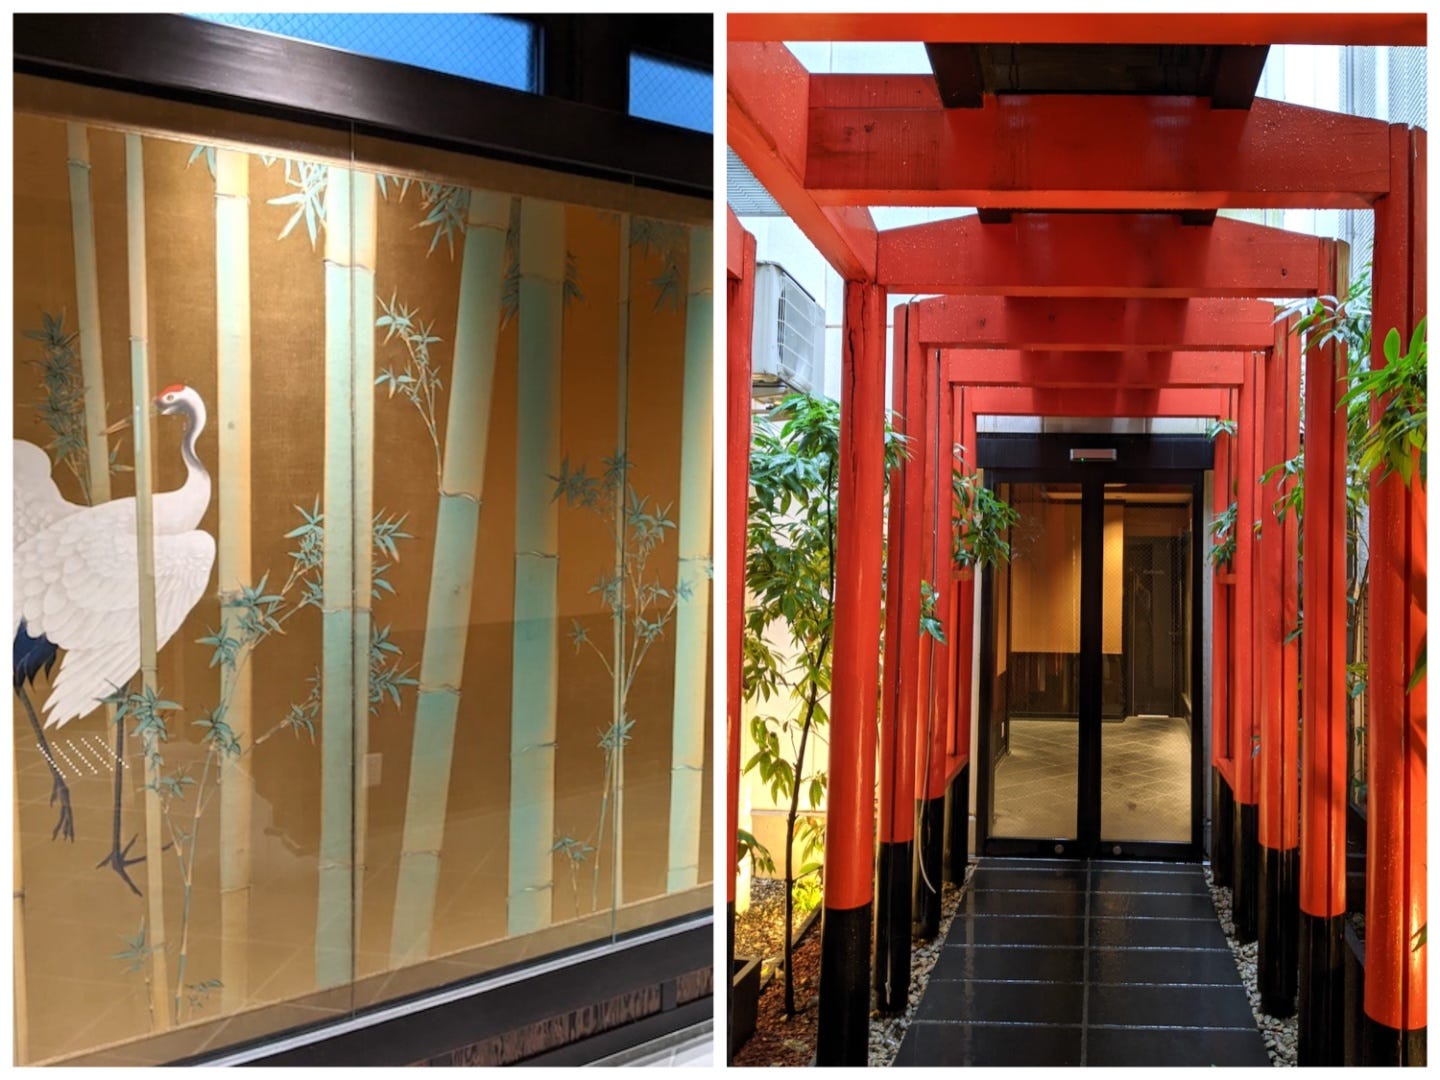 Eine Collage mit zwei Bildern.  Auf der linken Seite ist ein Gemälde mit goldenem Hintergrund zu sehen, auf dem Bambusstämme und weiße Kraniche abgebildet sind.  Auf der rechten Seite befindet sich eine Reihe orangefarbener Holztore über einem Steinweg, der zum Eingang eines Gebäudes führt.